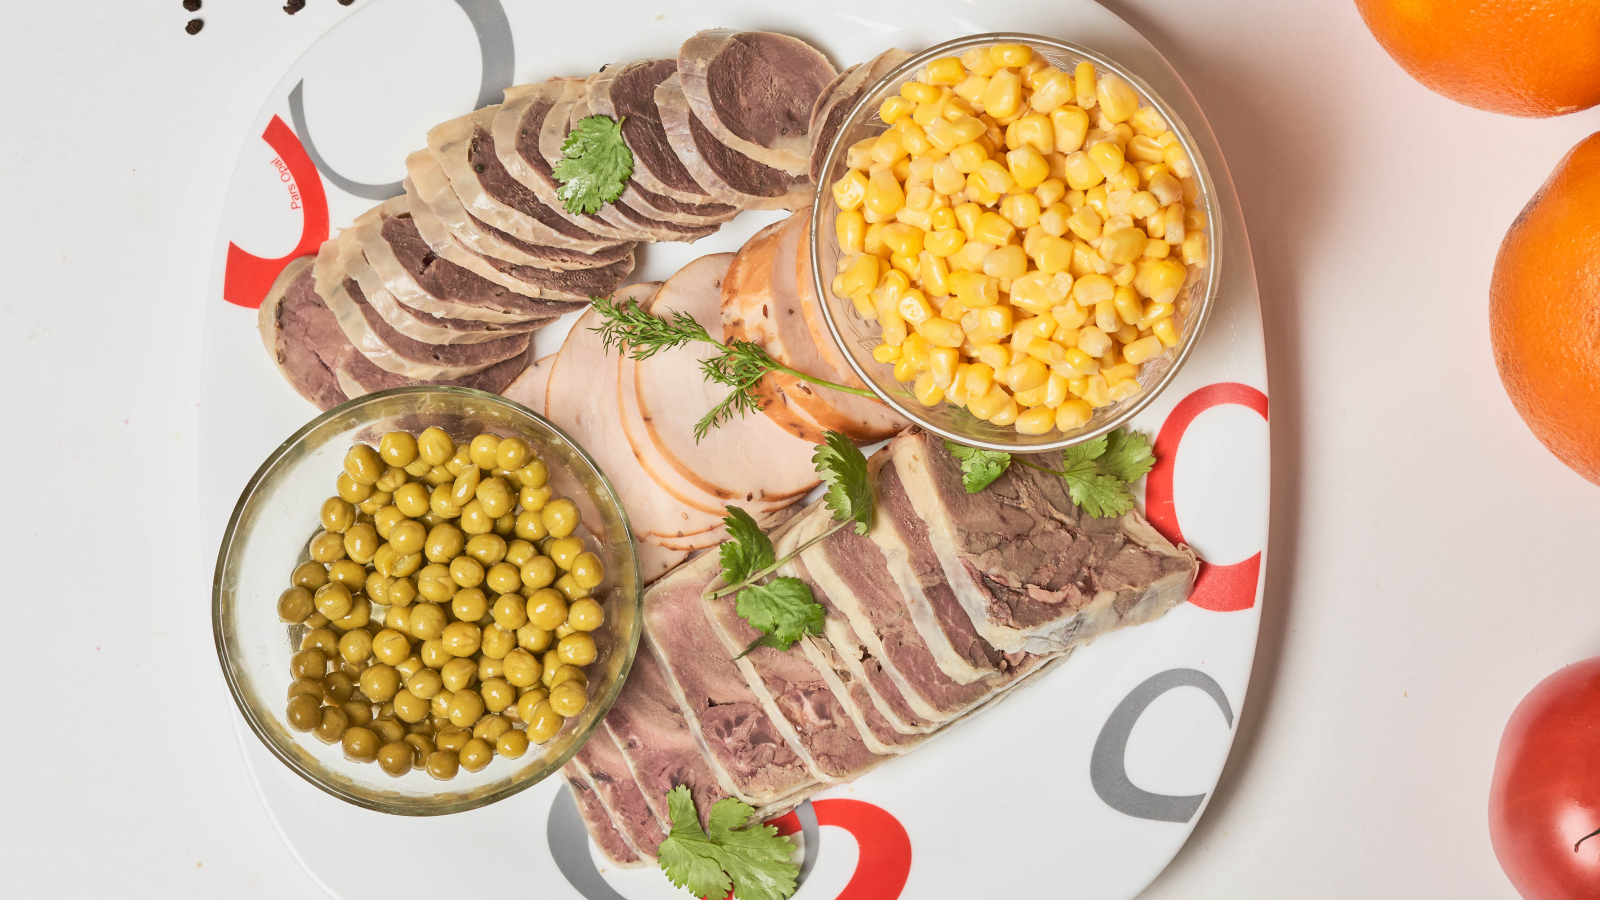 Мясные продукты на тарелке с кукурузой и зеленым горошком 